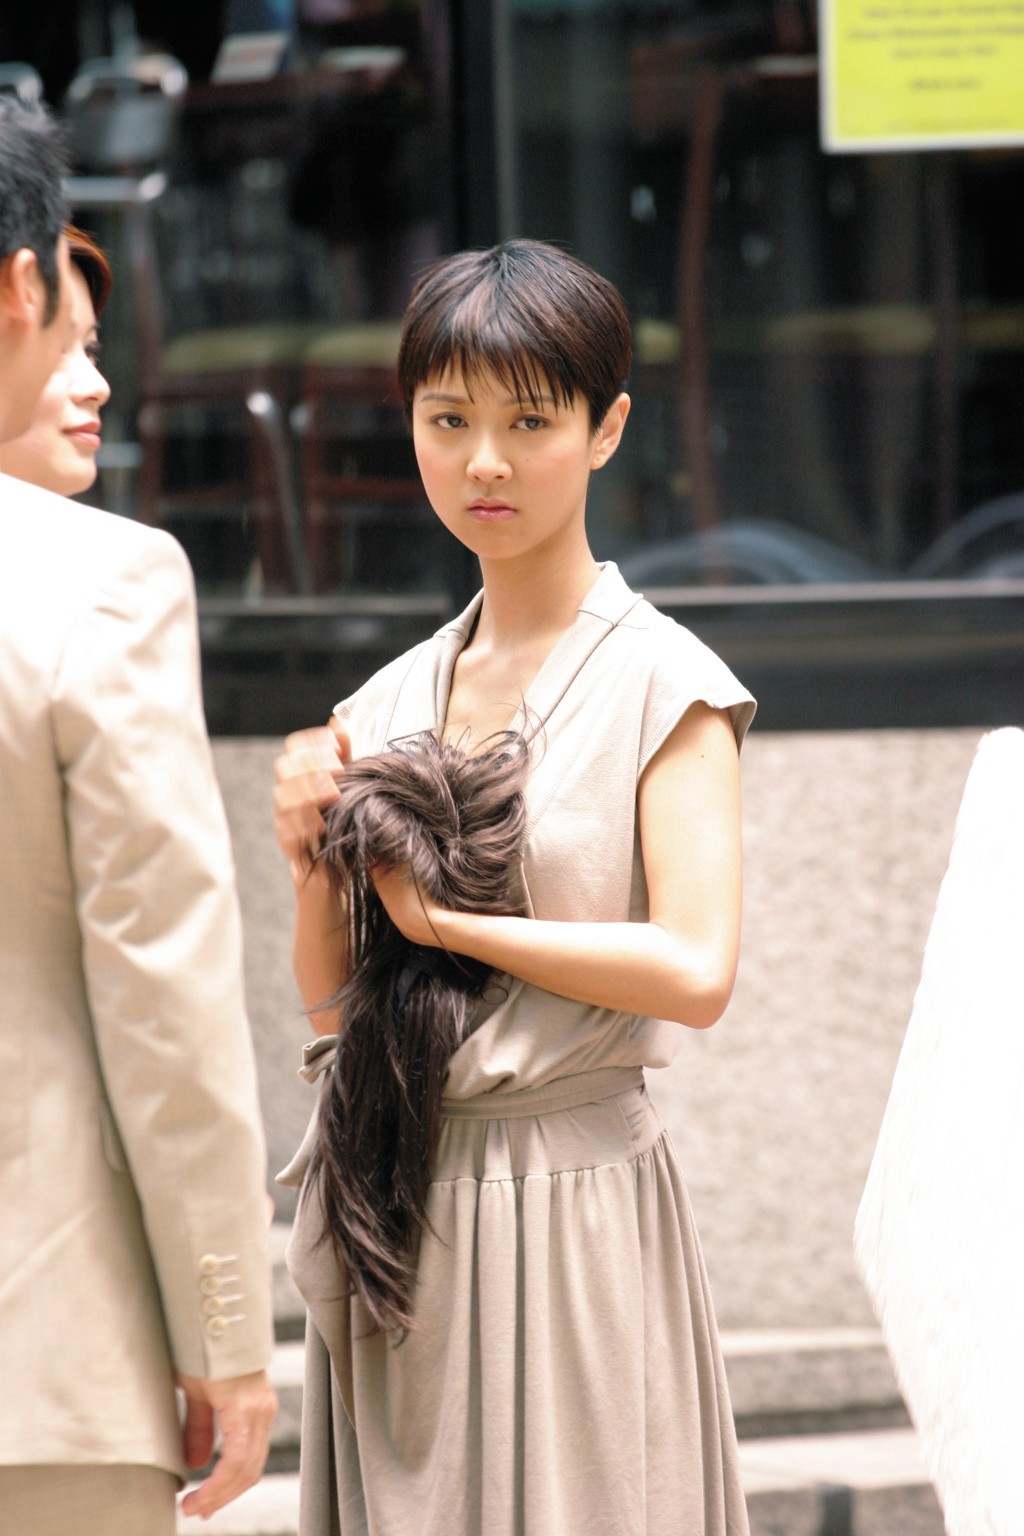 尤其拍TVB劇集《學警雄心》剪了短髮，頸長特徵更突出。